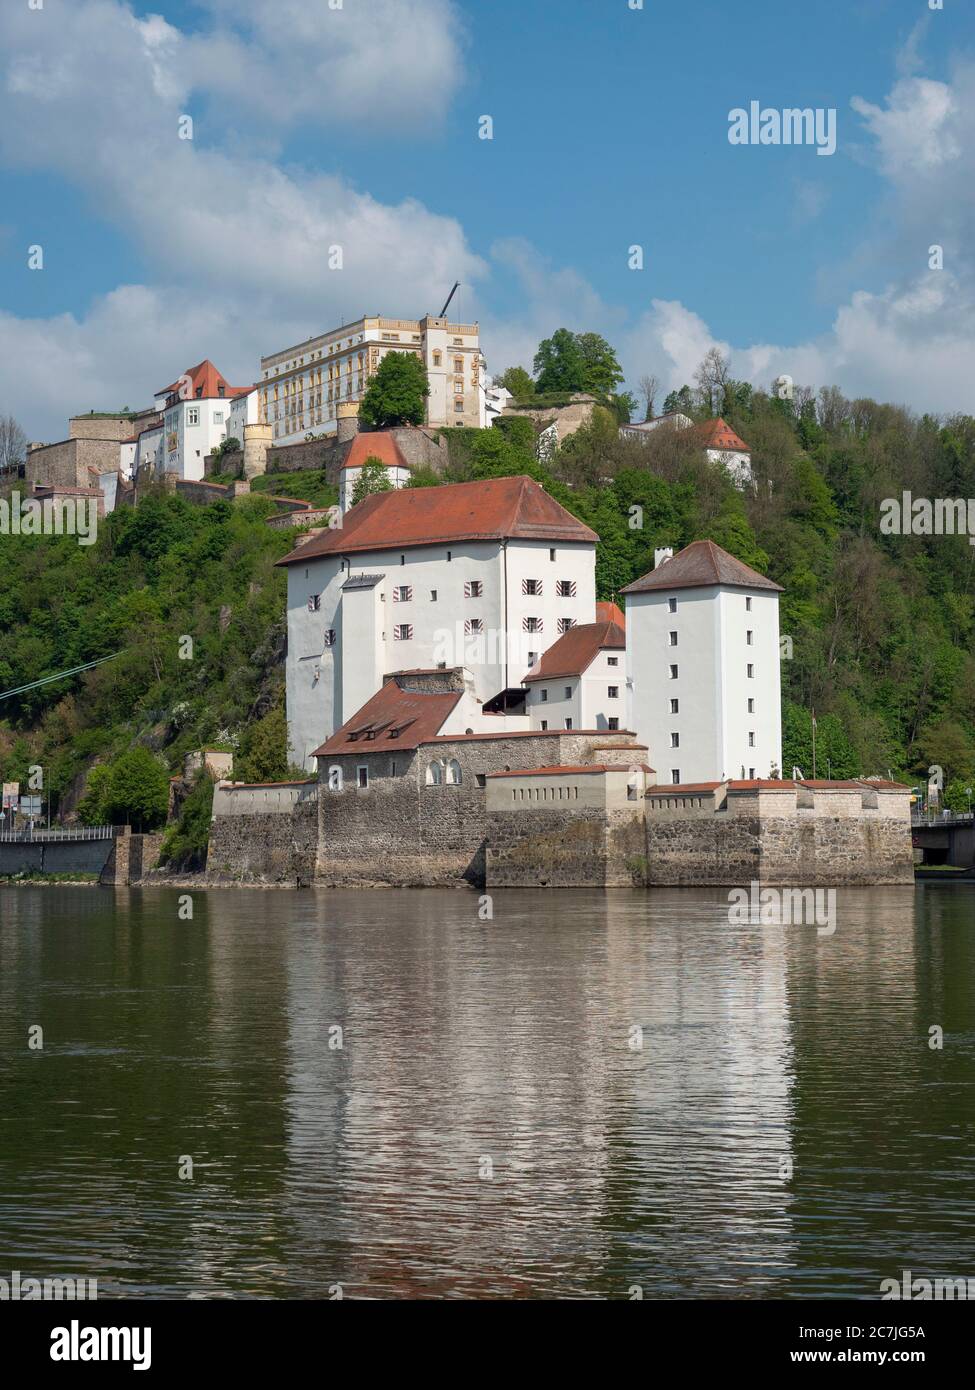 Maison supérieure fixe et château inférieur sur Dreiflüsseeck, Passau, Bavière, Allemagne Banque D'Images